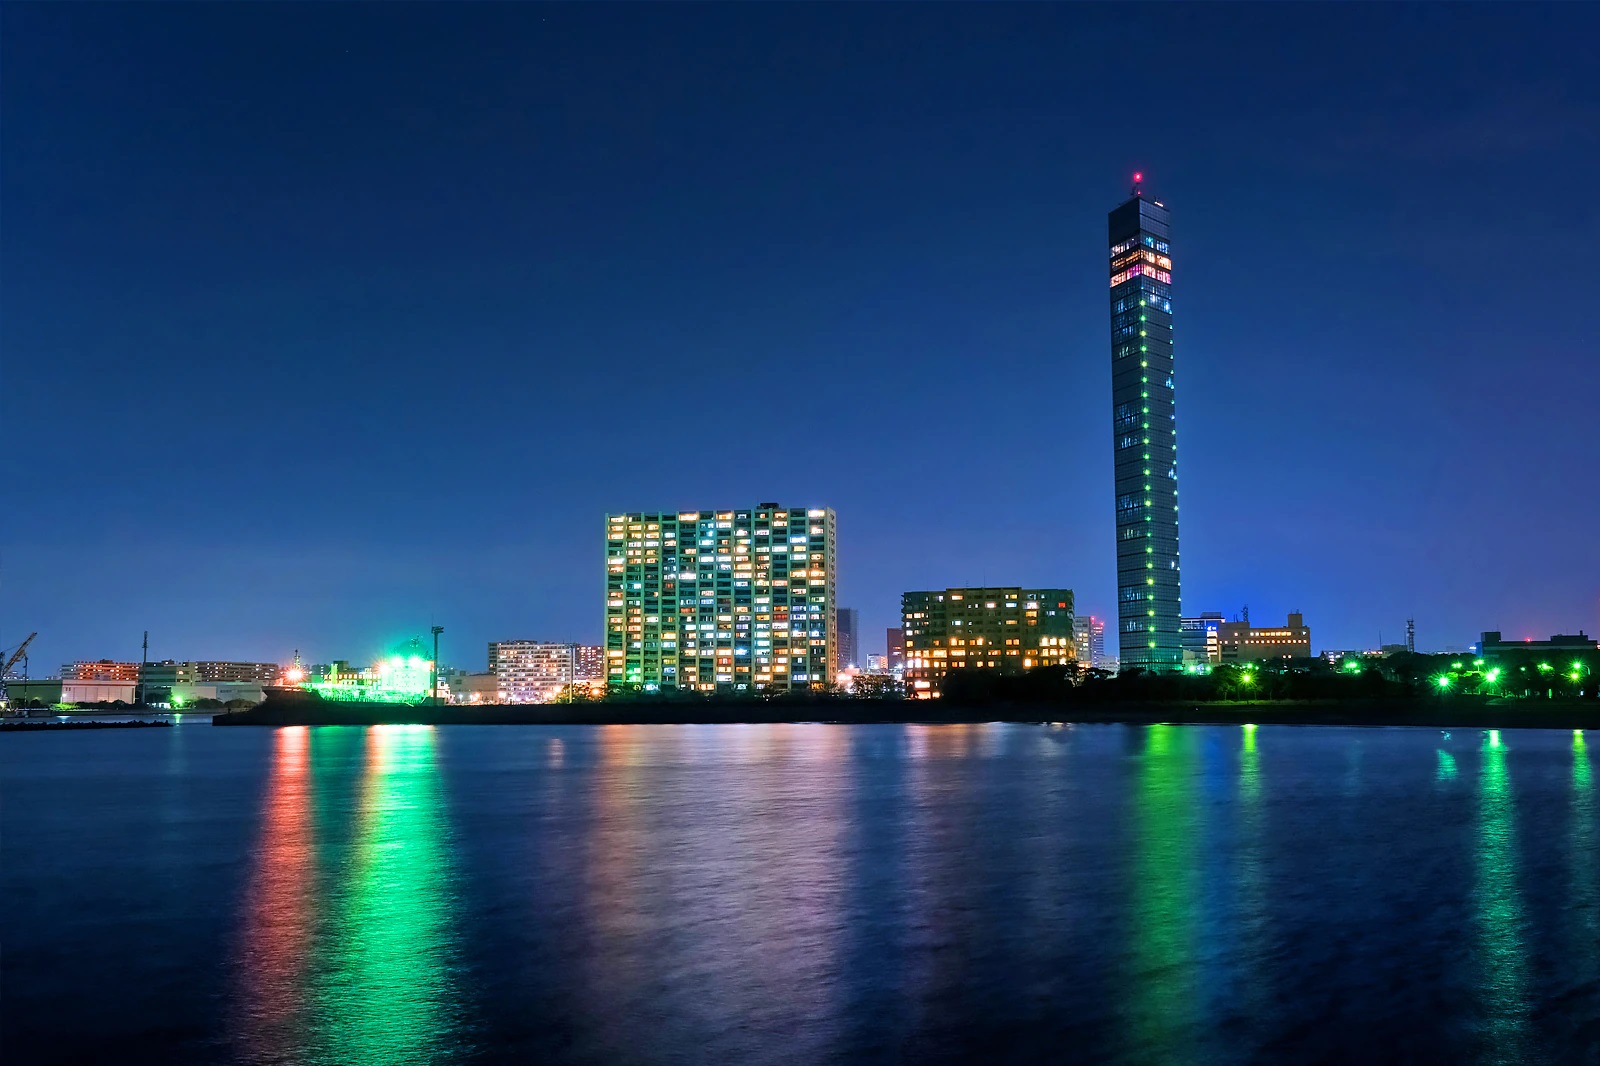 chiba port tower night view photo